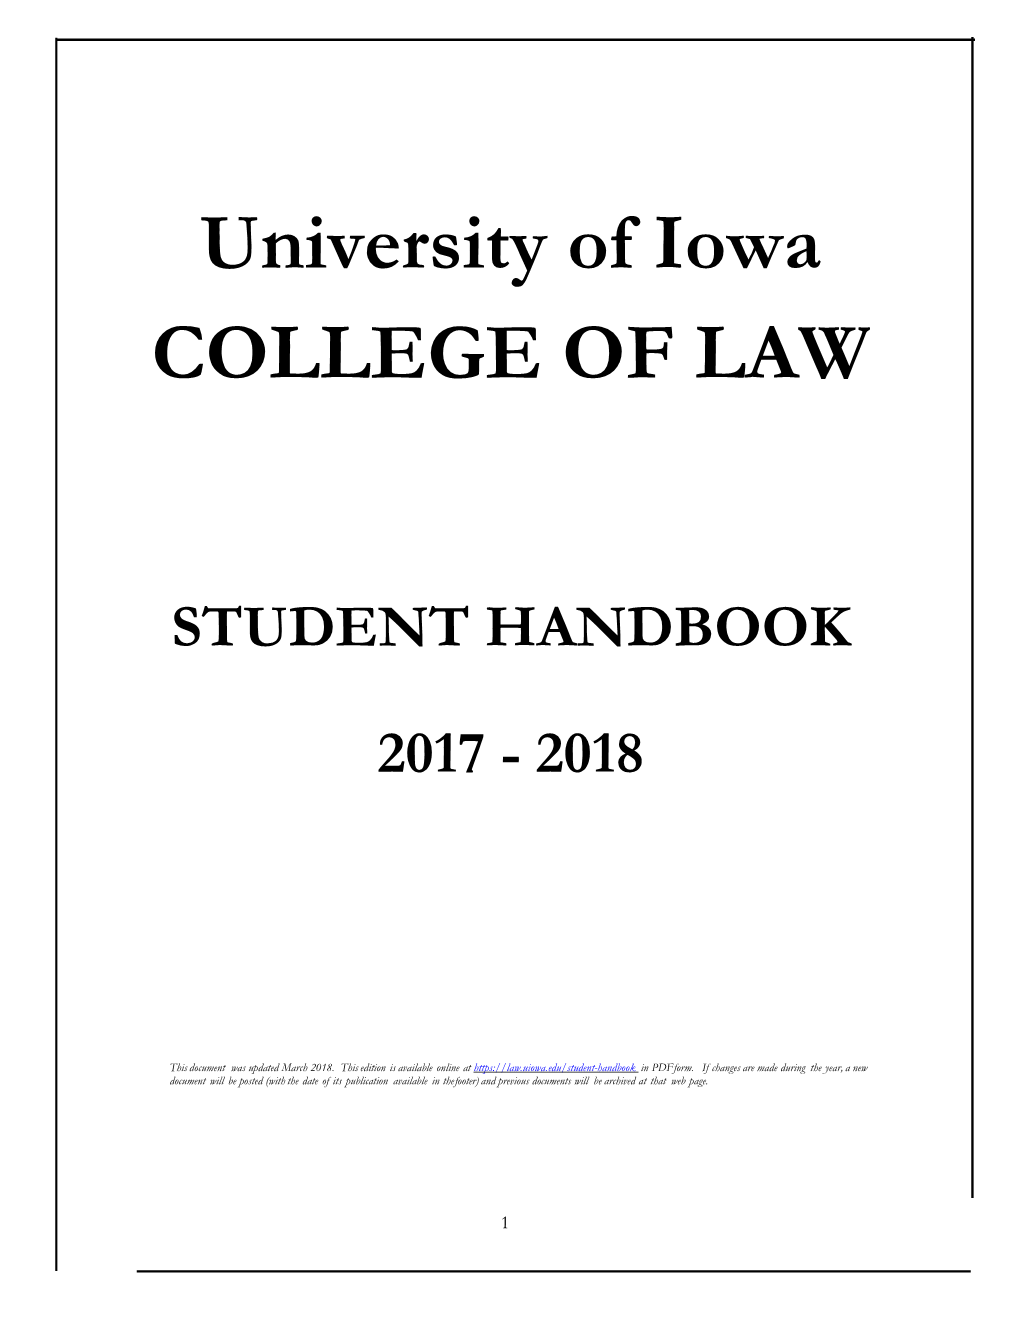 Student Handbook 2017